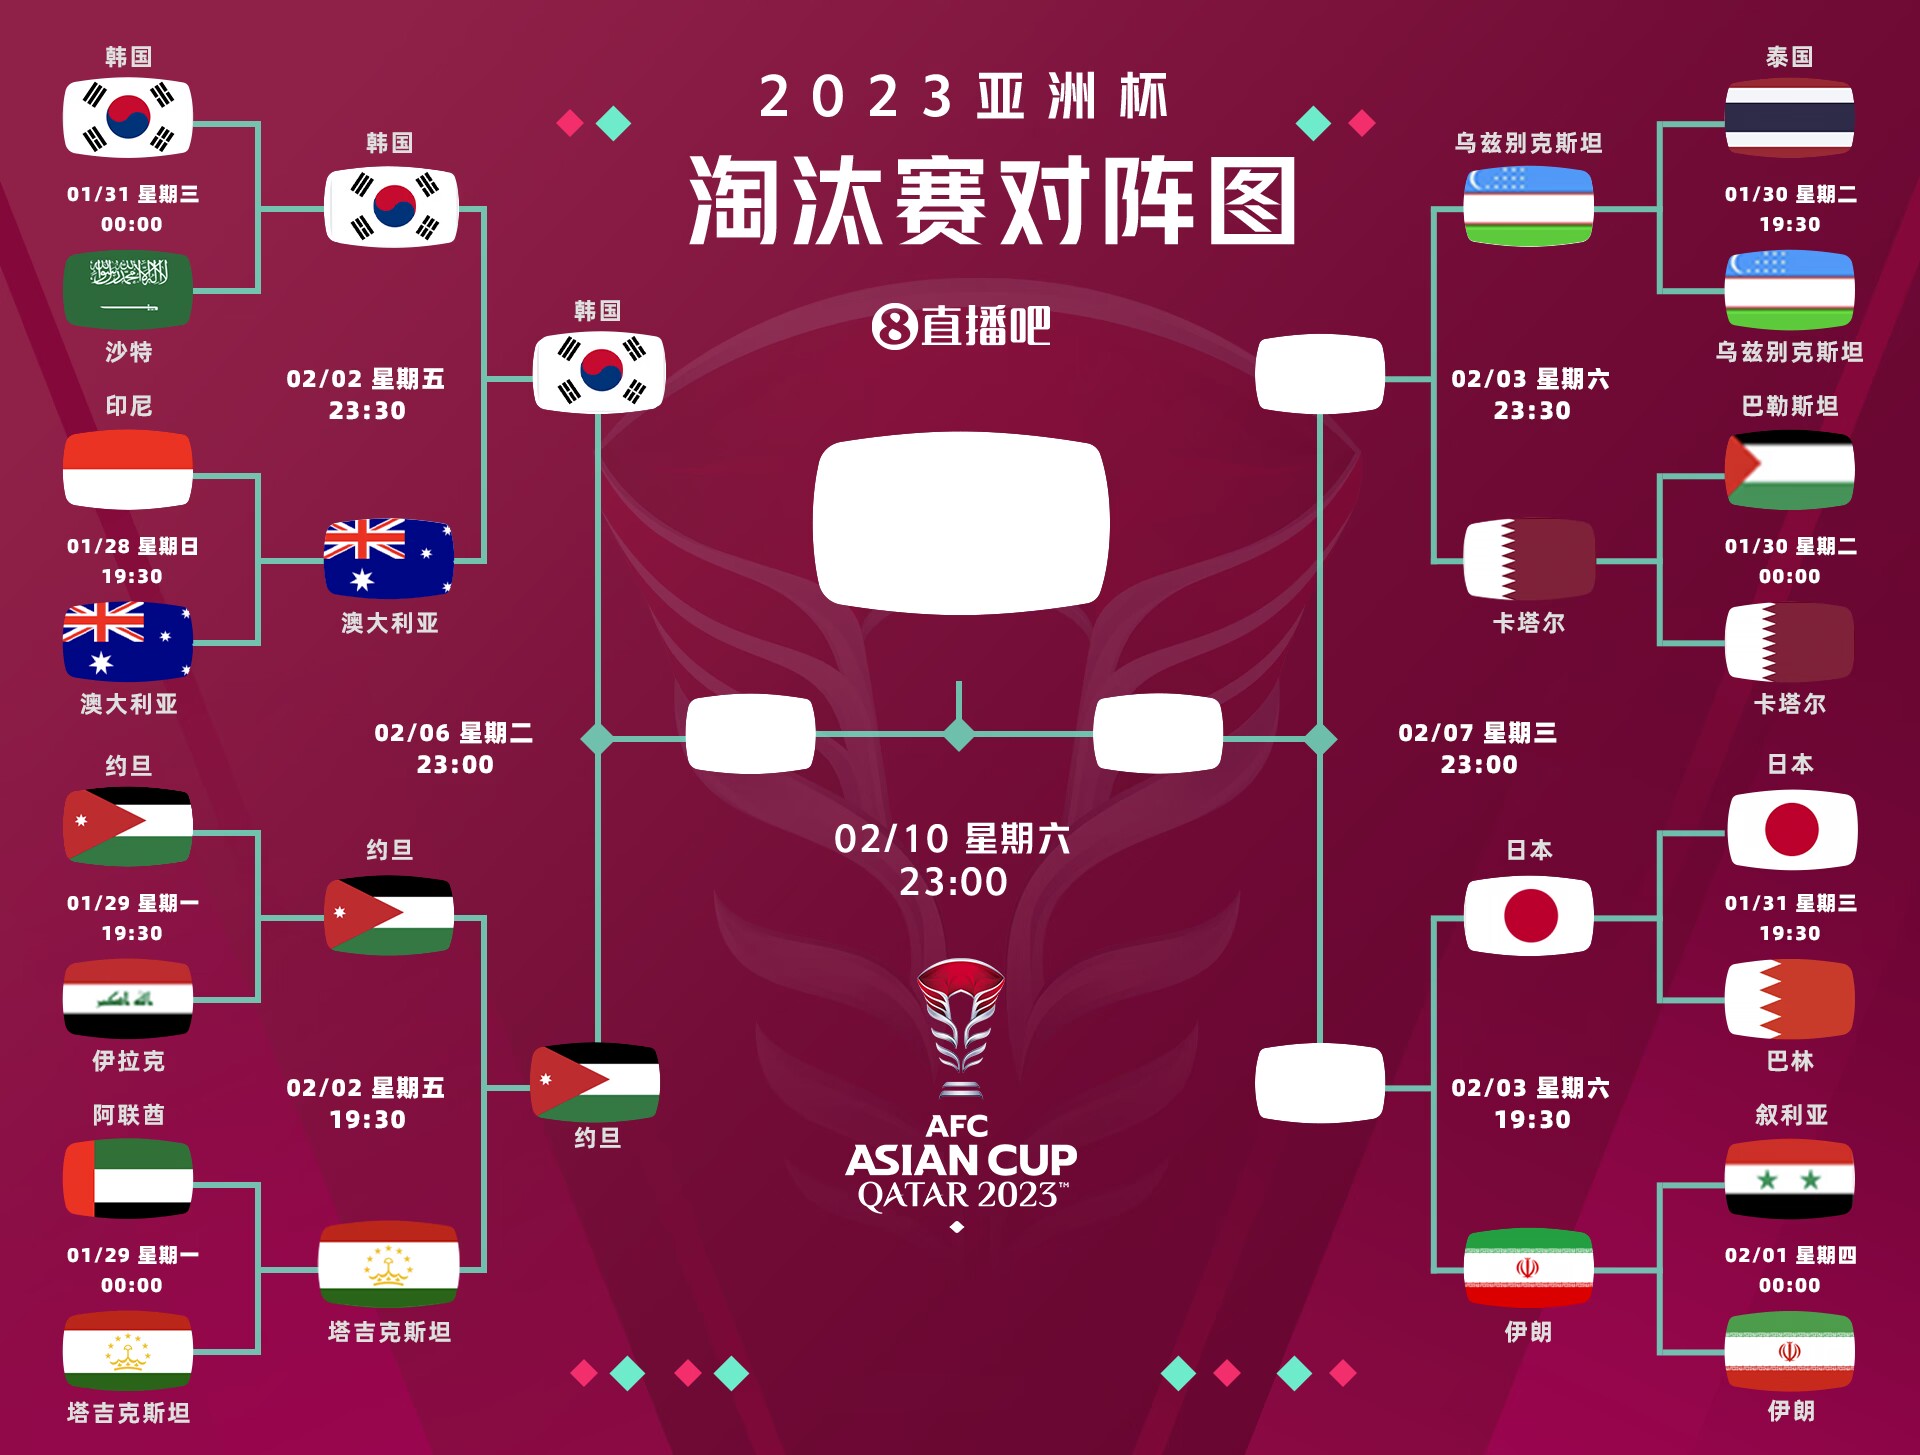 策略奏效👀韩国小组第2出线，连胜沙特澳大利亚后剑指决赛